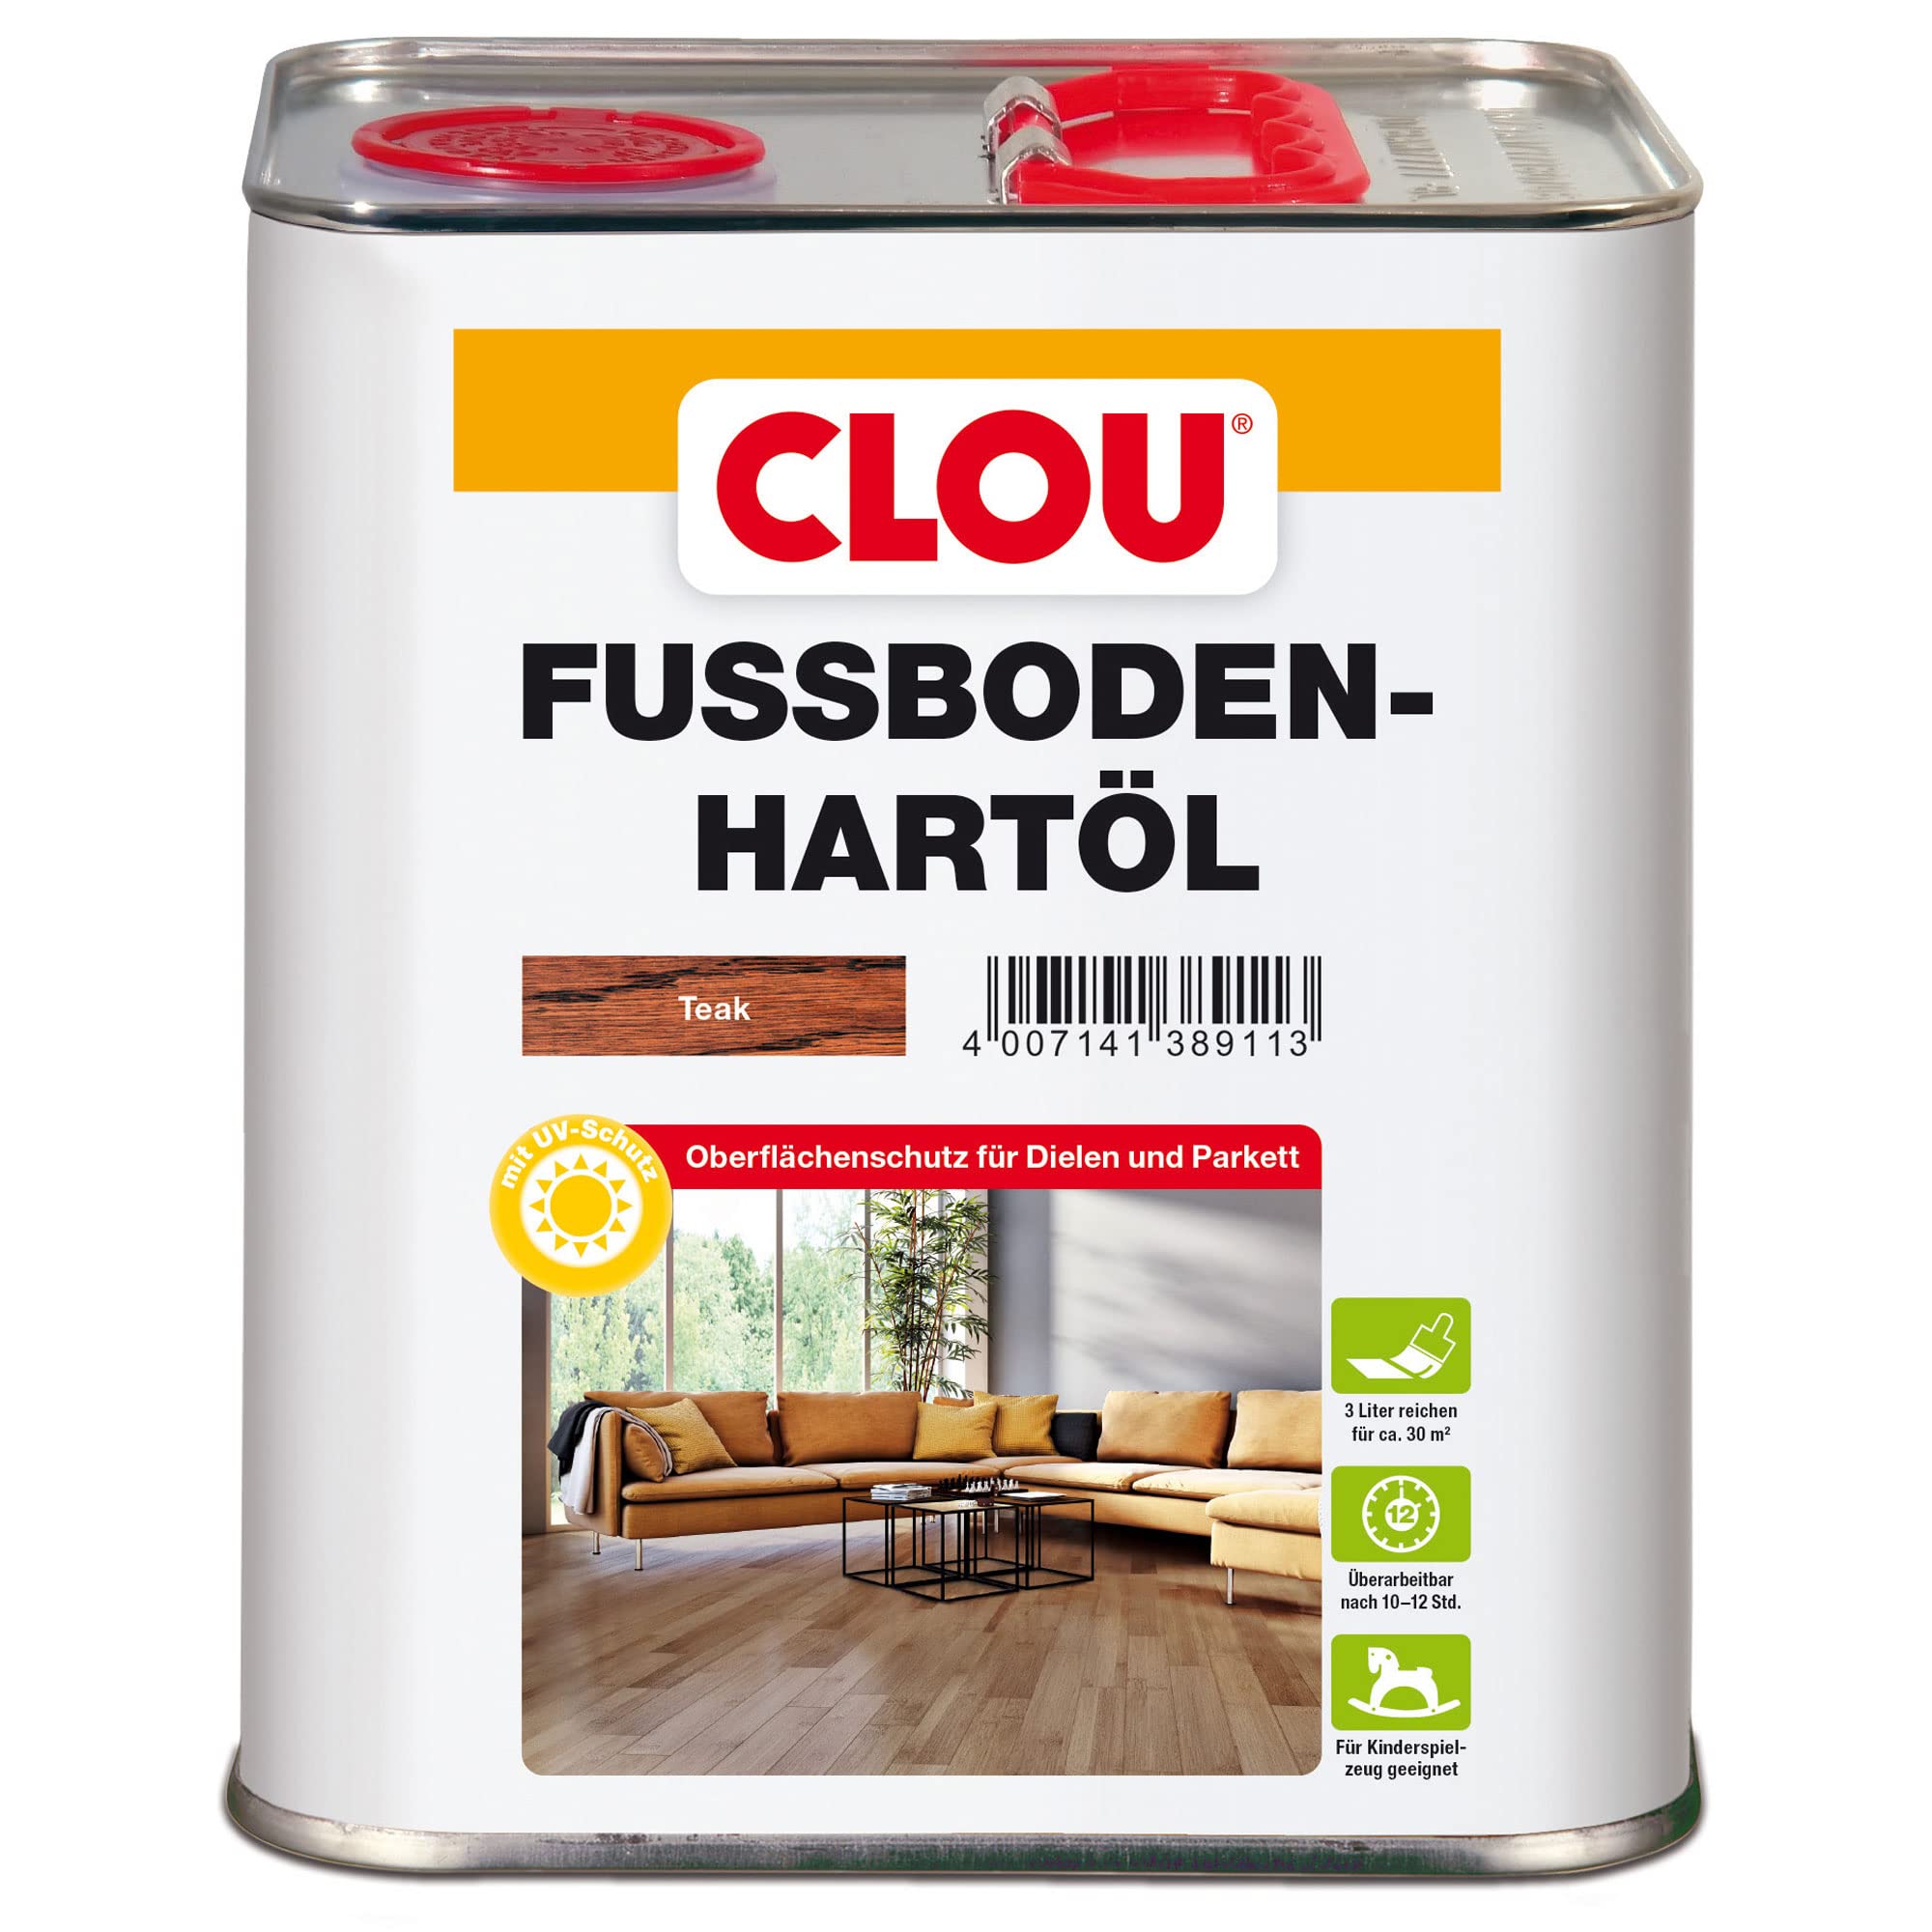 CLOU Fußboden-Hartöl, Parkettöl zur Pflege und Holzpolitur von Holz-Oberflächen wie Parkett, Dielen, Treppen und Möbel, teak, 3 Liter